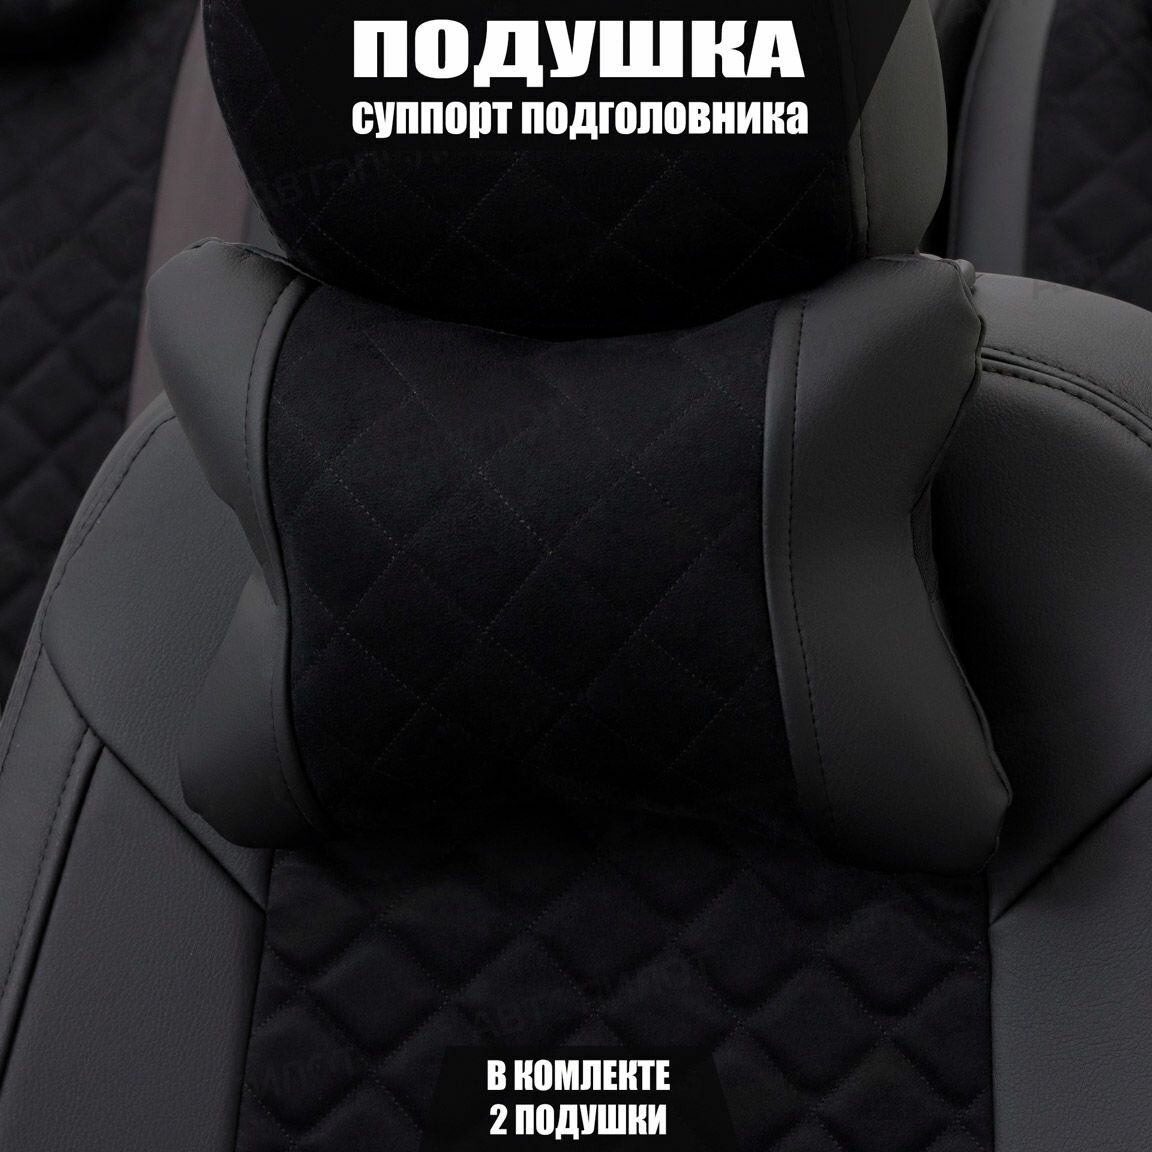 Подушки под шею (суппорт подголовника) для Ауди А3 (1996 - 2000) хэтчбек 5 дверей / Audi A3 Ромб Алькантара 2 подушки Черный и темно-серый